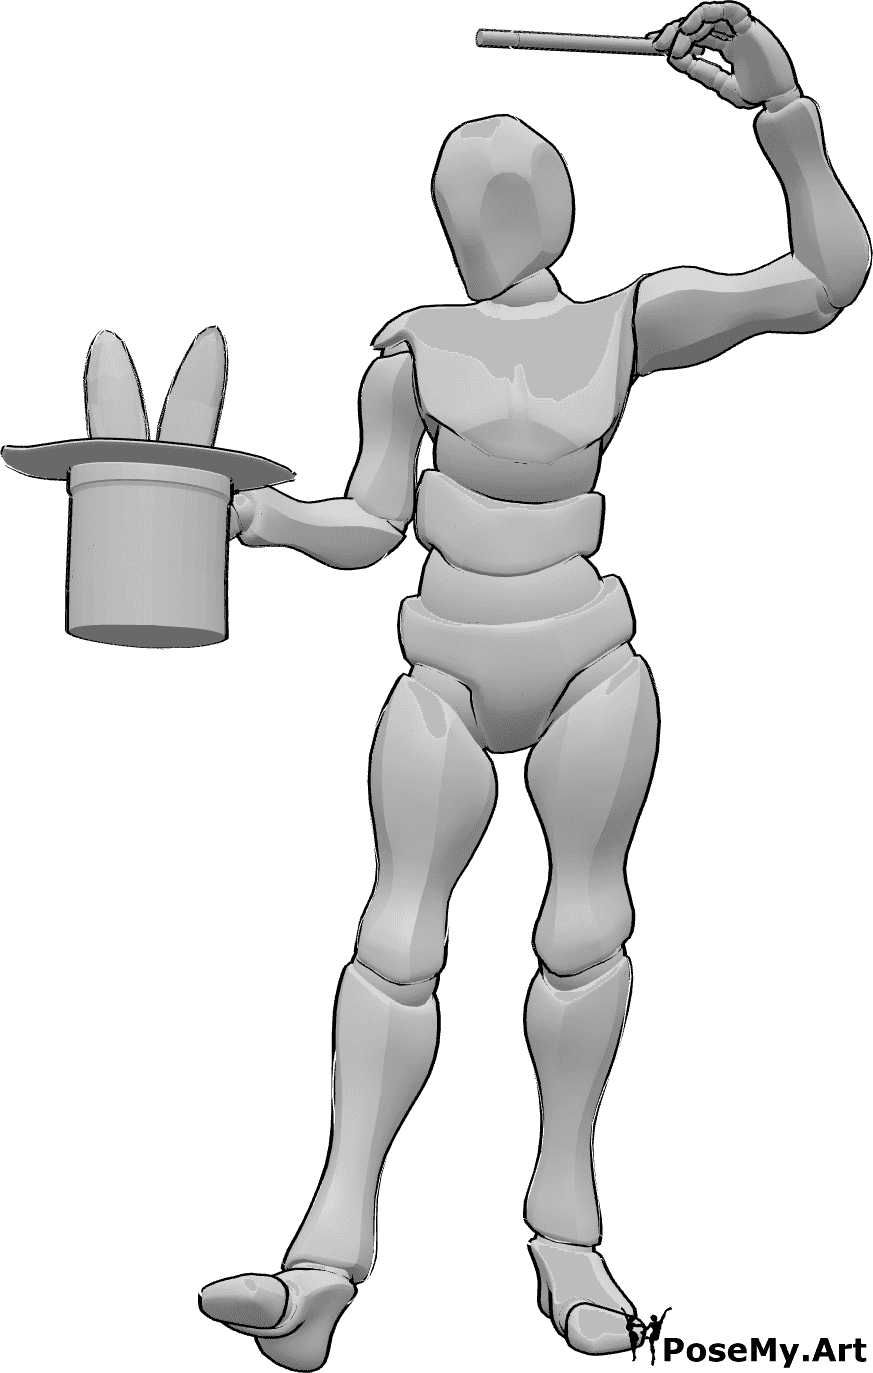 Posen-Referenz- Beschwörende Kaninchen-Pose - Männlicher Zauberer zaubert mit seinem Zauberstab ein Kaninchen aus dem Hut